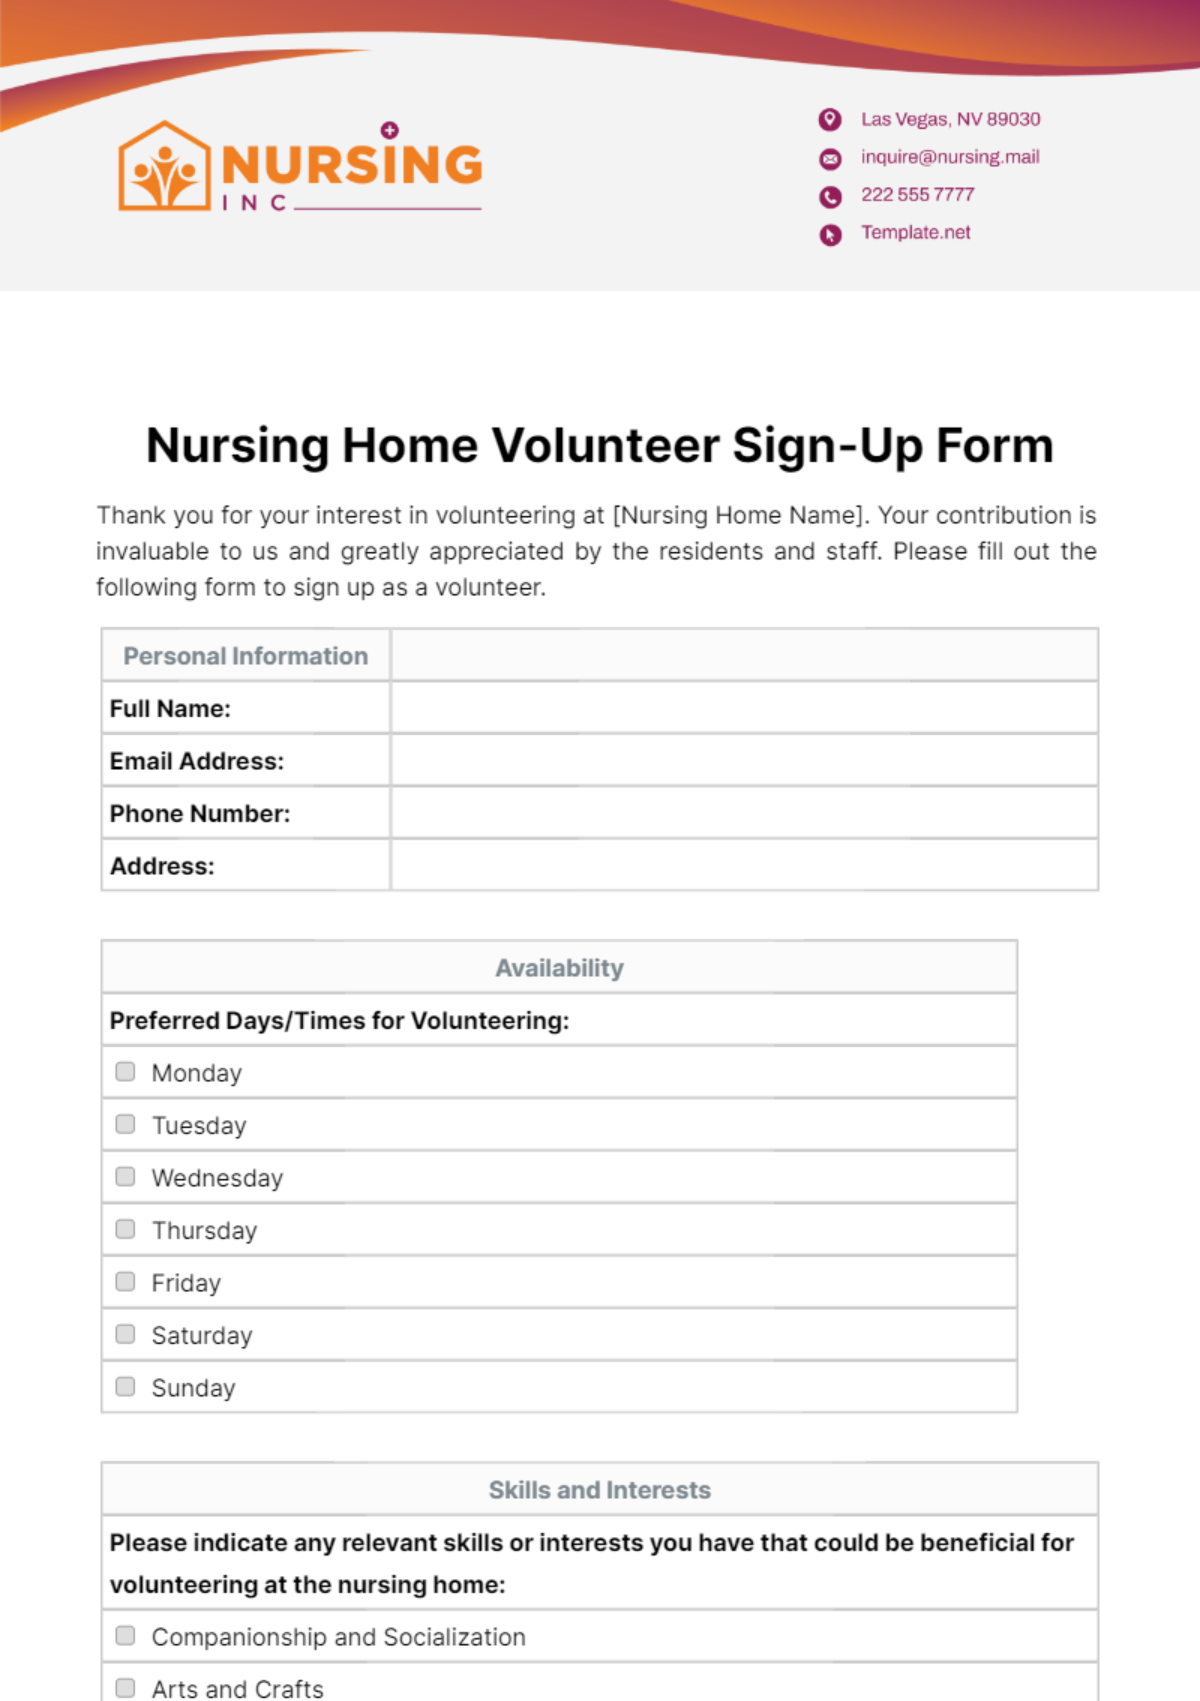 Nursing Home Volunteer Sign-Up Form Template